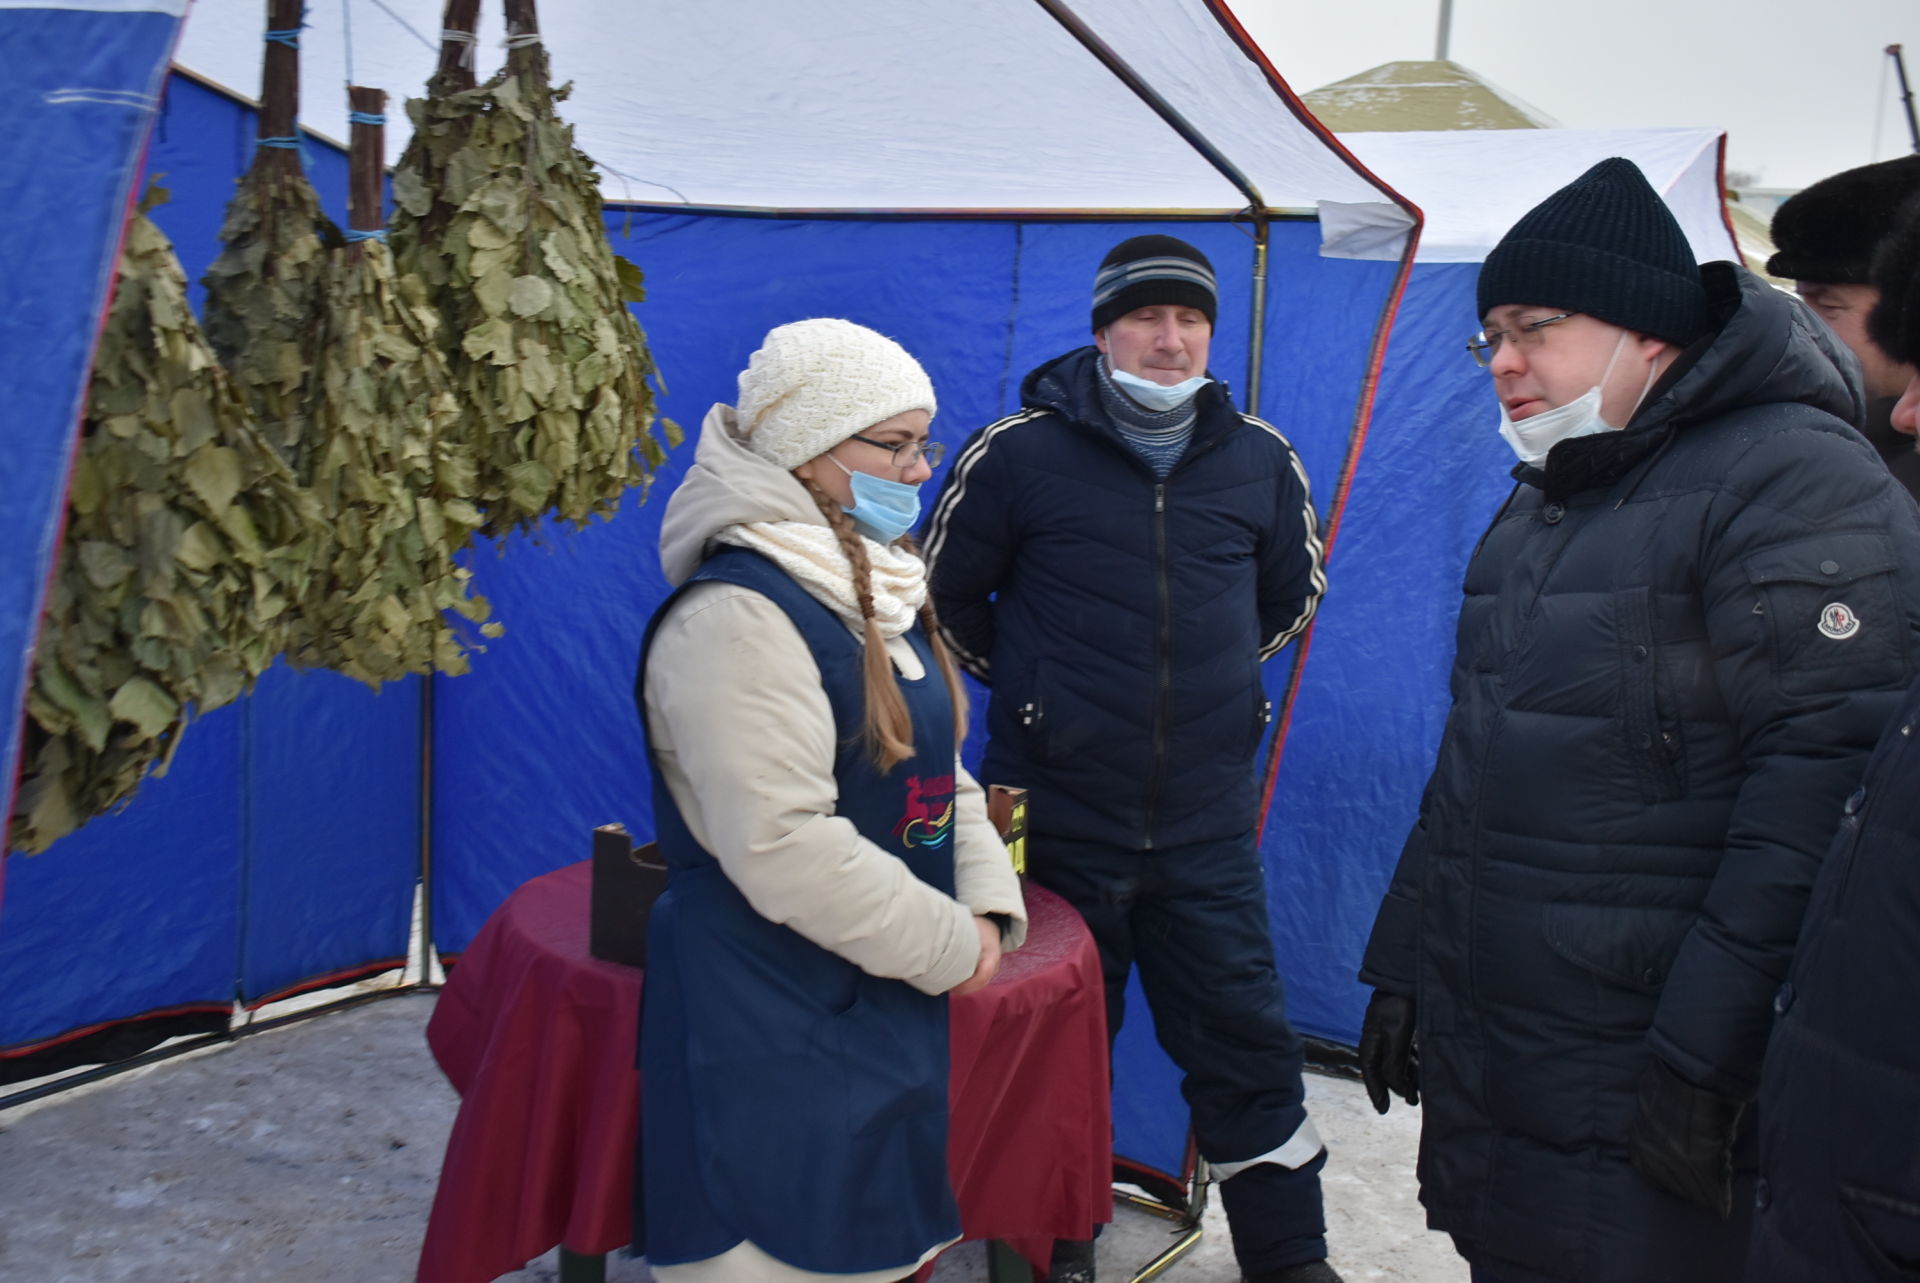 Алексеевцы встречают зиму ярмаркой